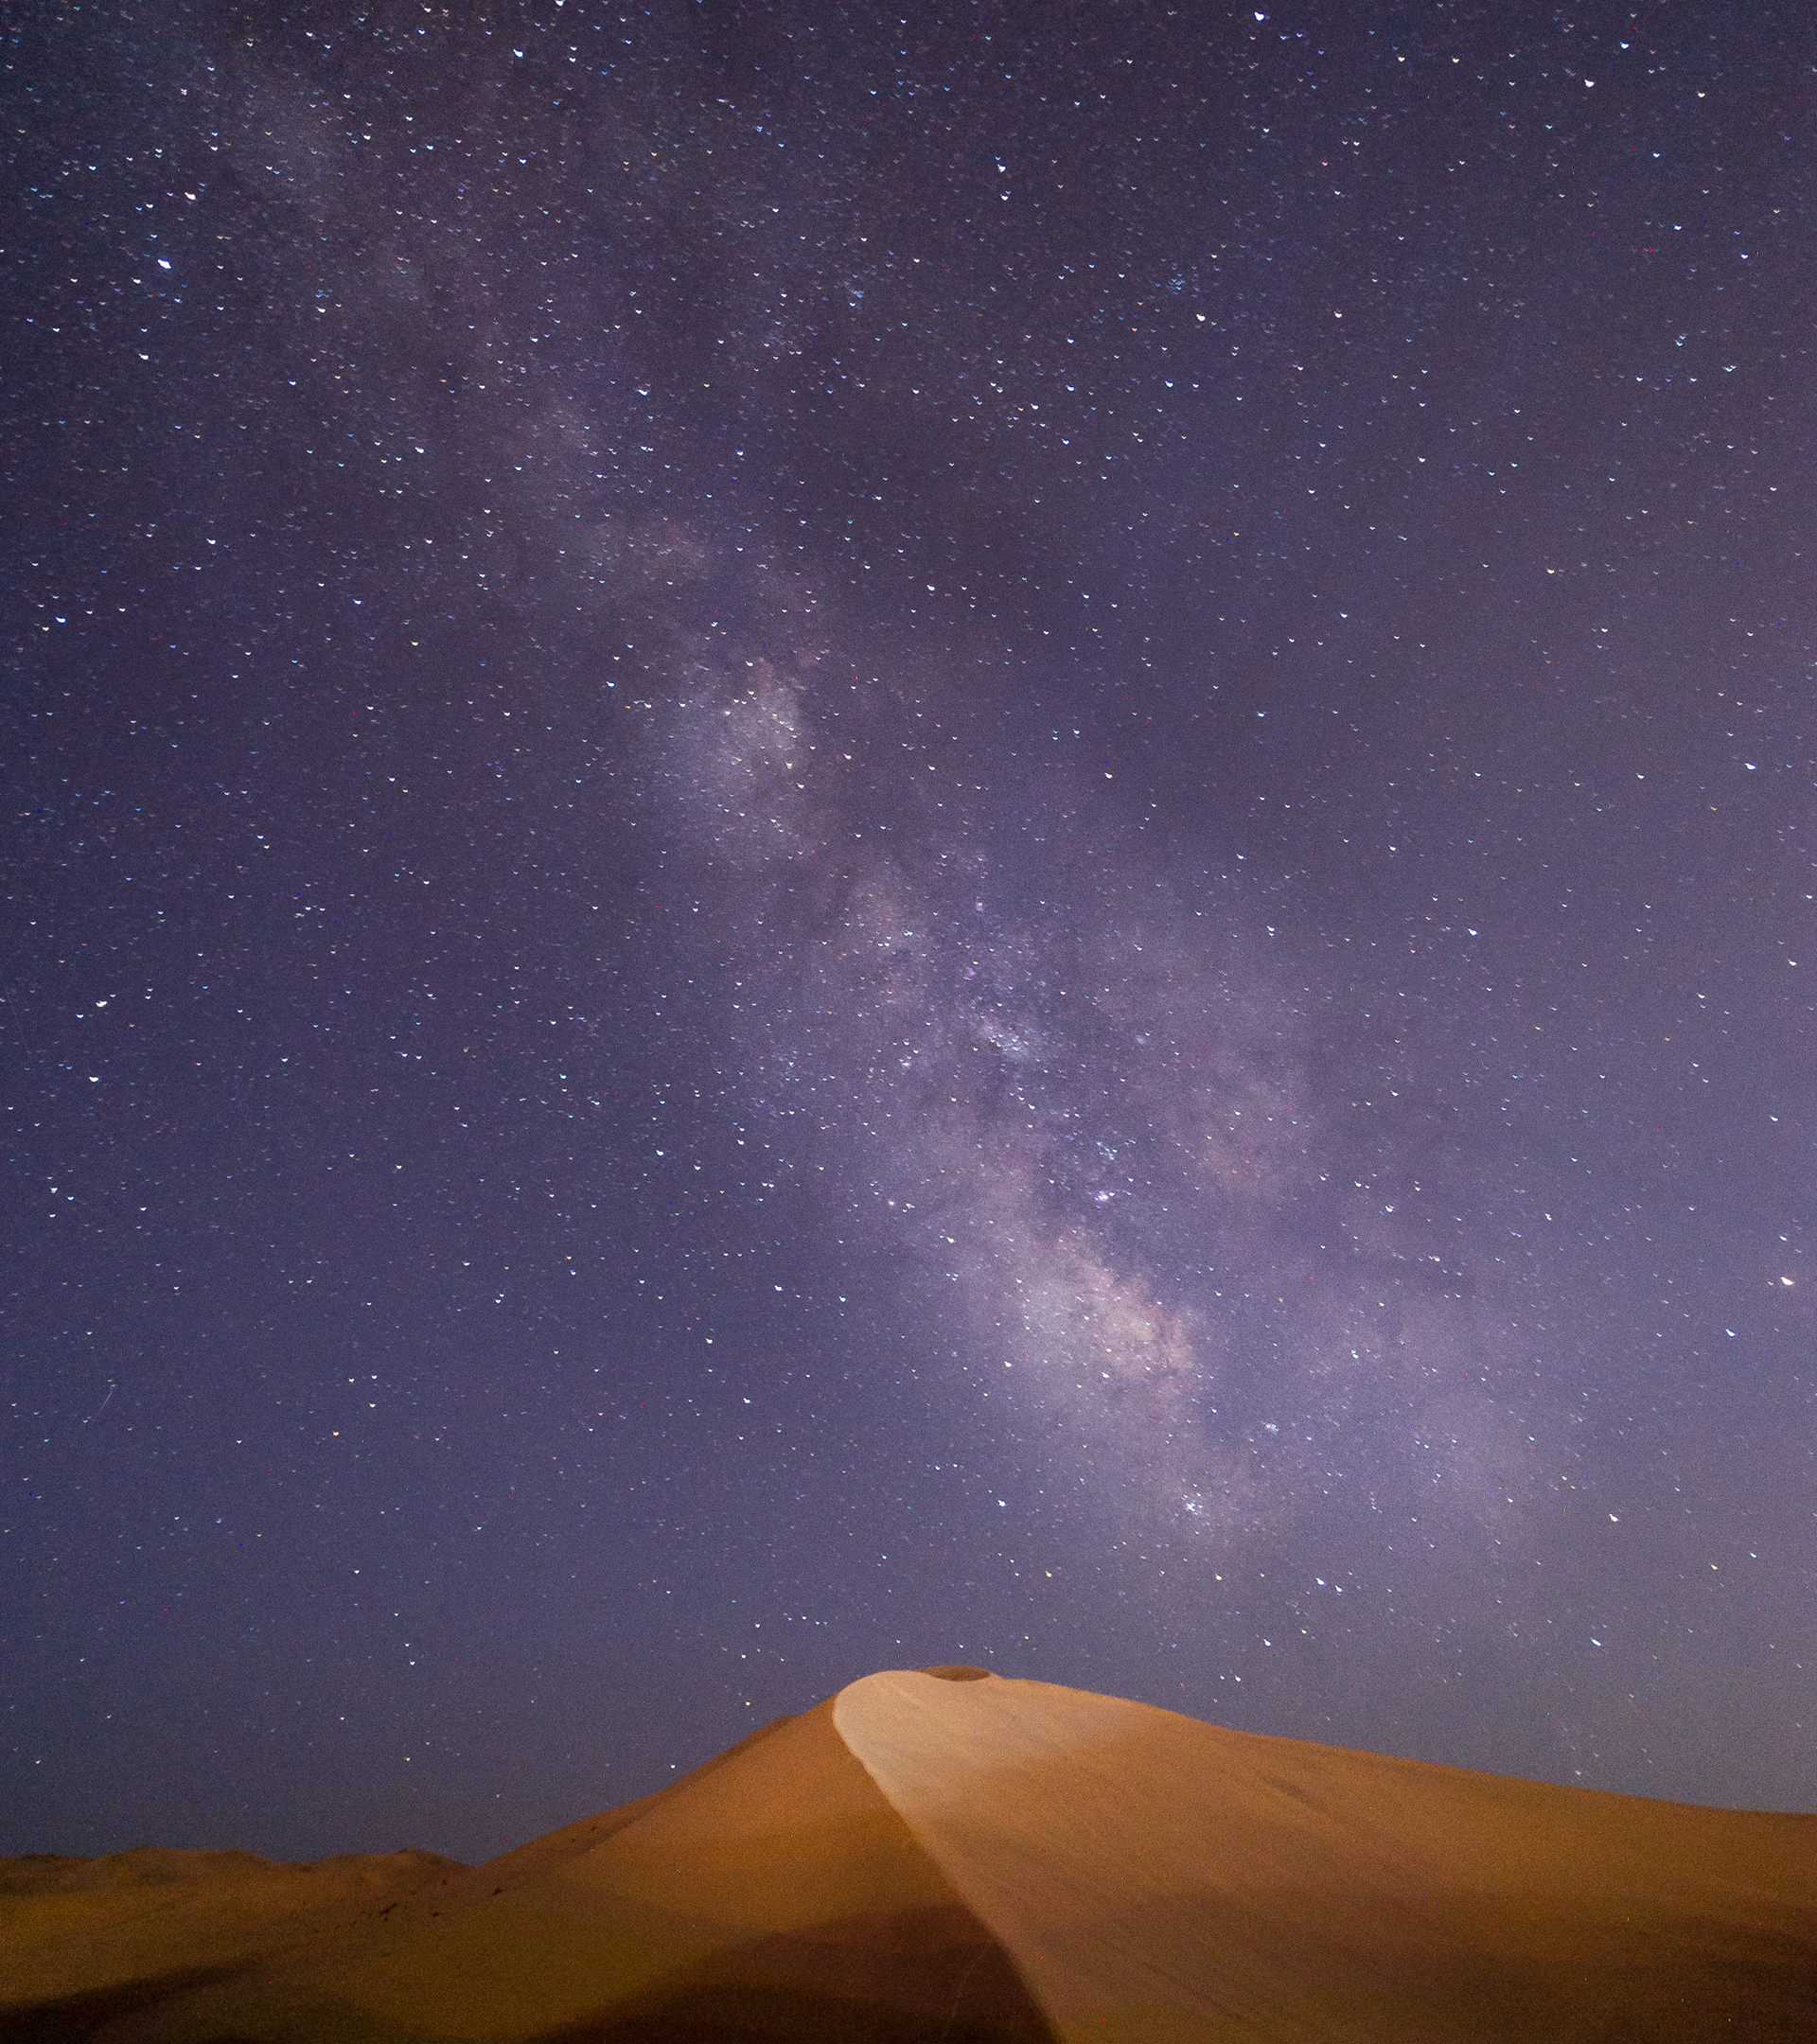 探索神秘的沙漠无人区，高清沙漠旅游手机壁纸图片